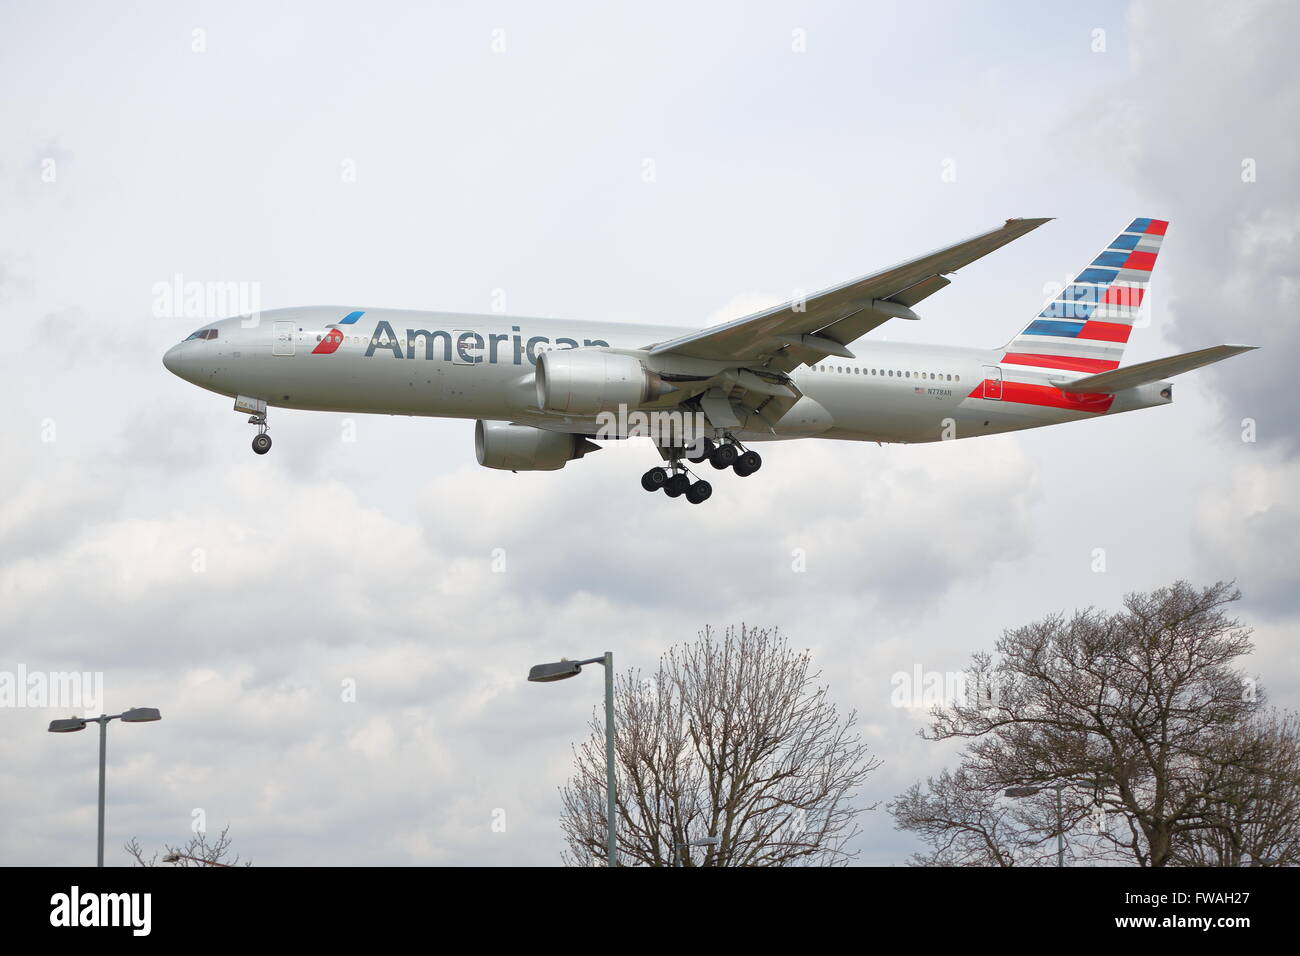 American Airlines Boeing 777-200 ER N778un arrivando all'Aeroporto Heathrow di Londra, Regno Unito Foto Stock